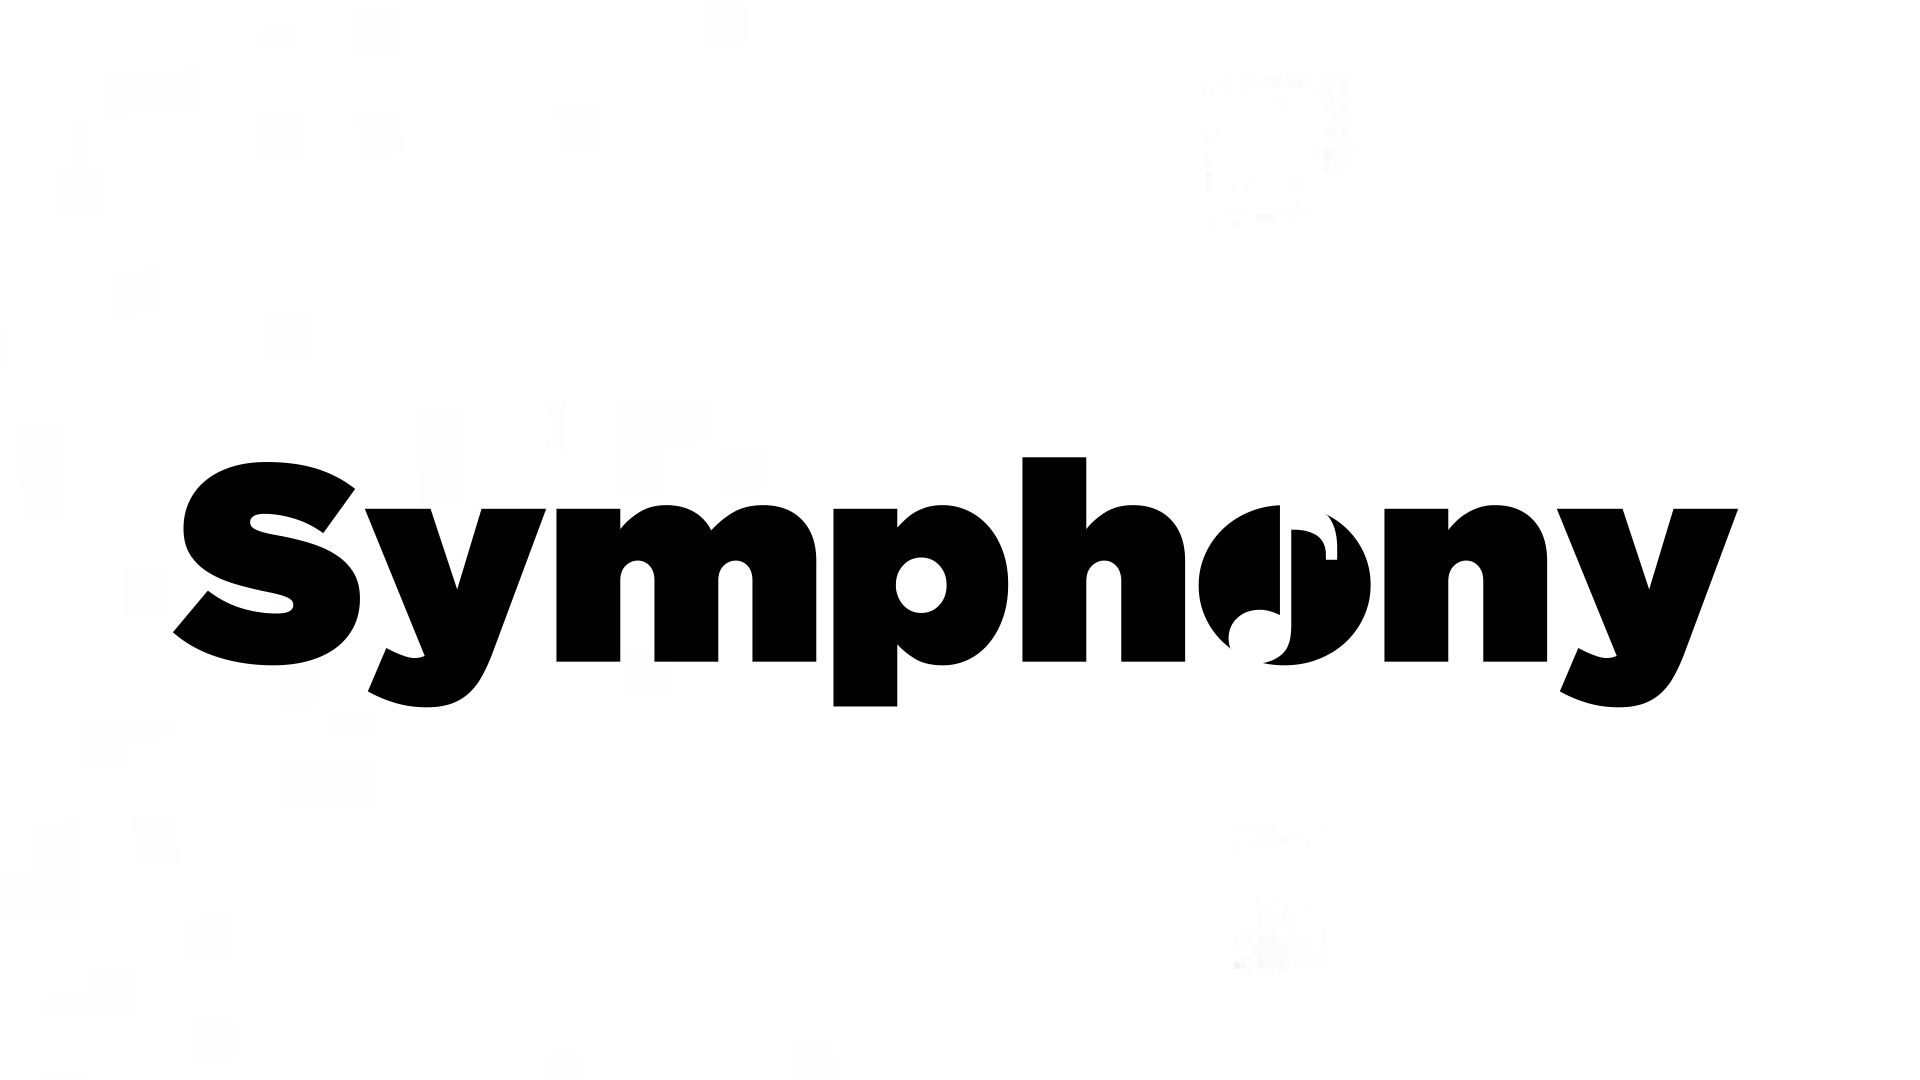 Symphony Tv Channel Robloxian Tv Wiki Fandom - symphony tv channel robloxian tv wiki fandom